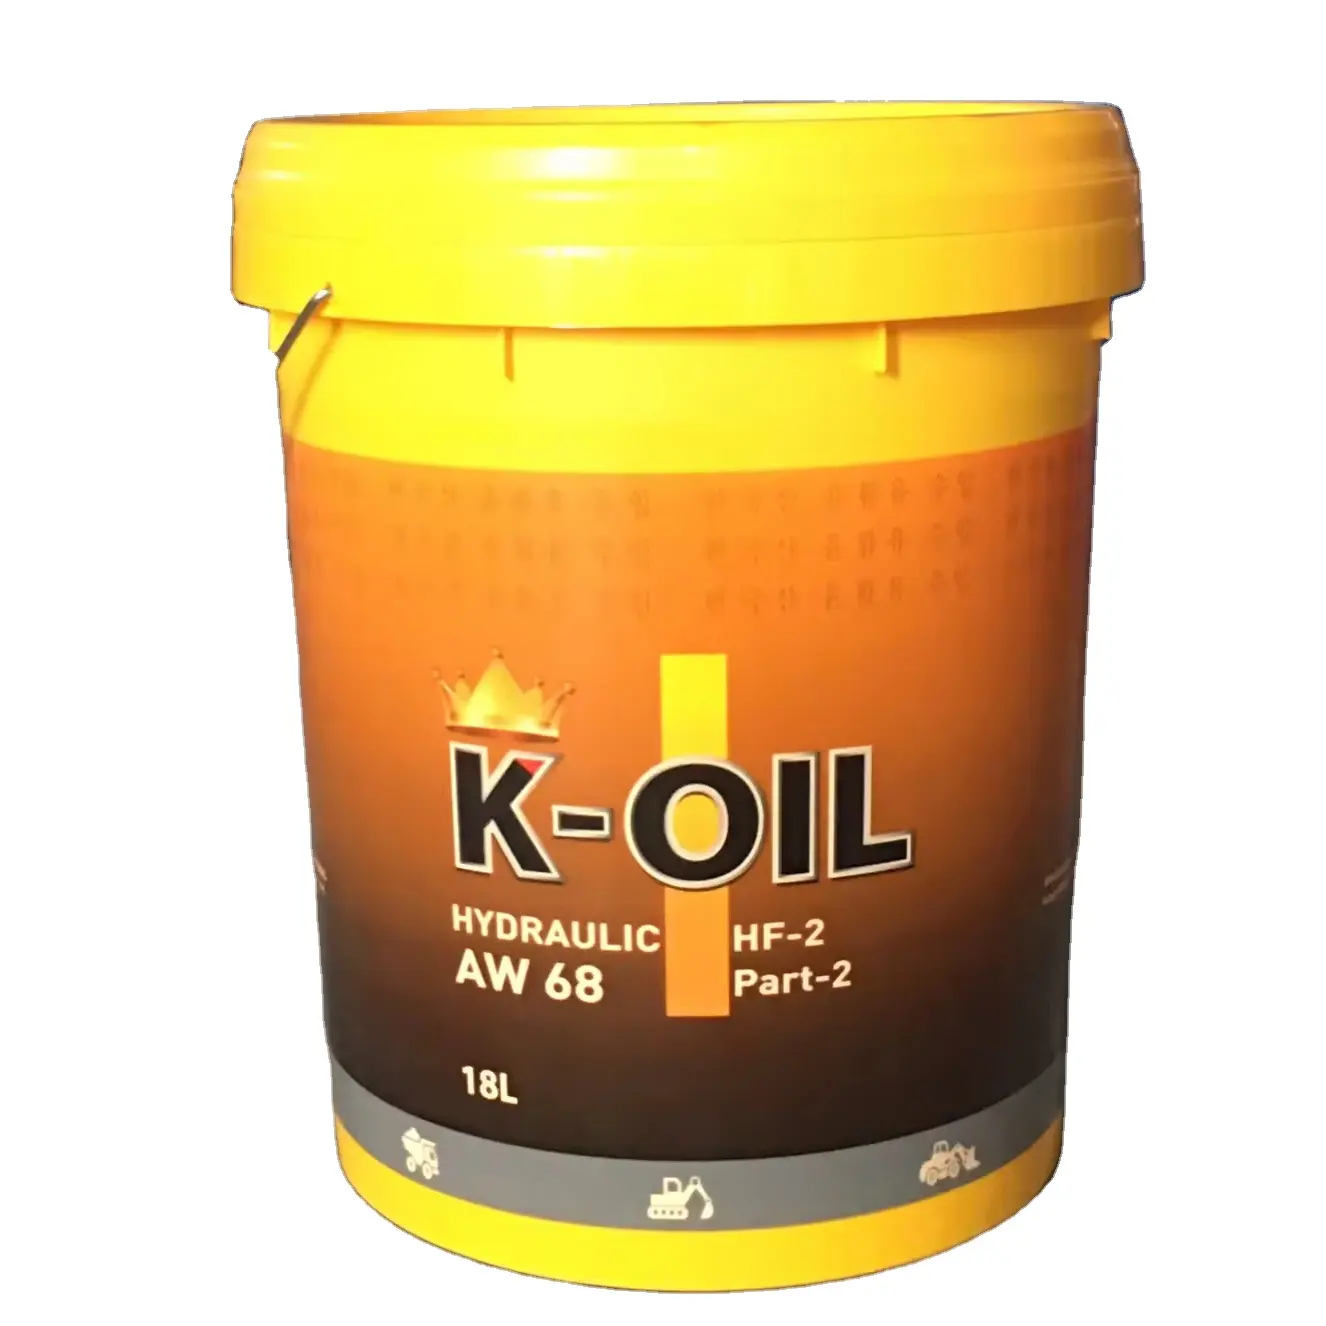 K-oil hidráulico AW68 aceite de transmisión lubricante de alto estándar y al por mayor para trenes, barcos fabricante de Vietnam